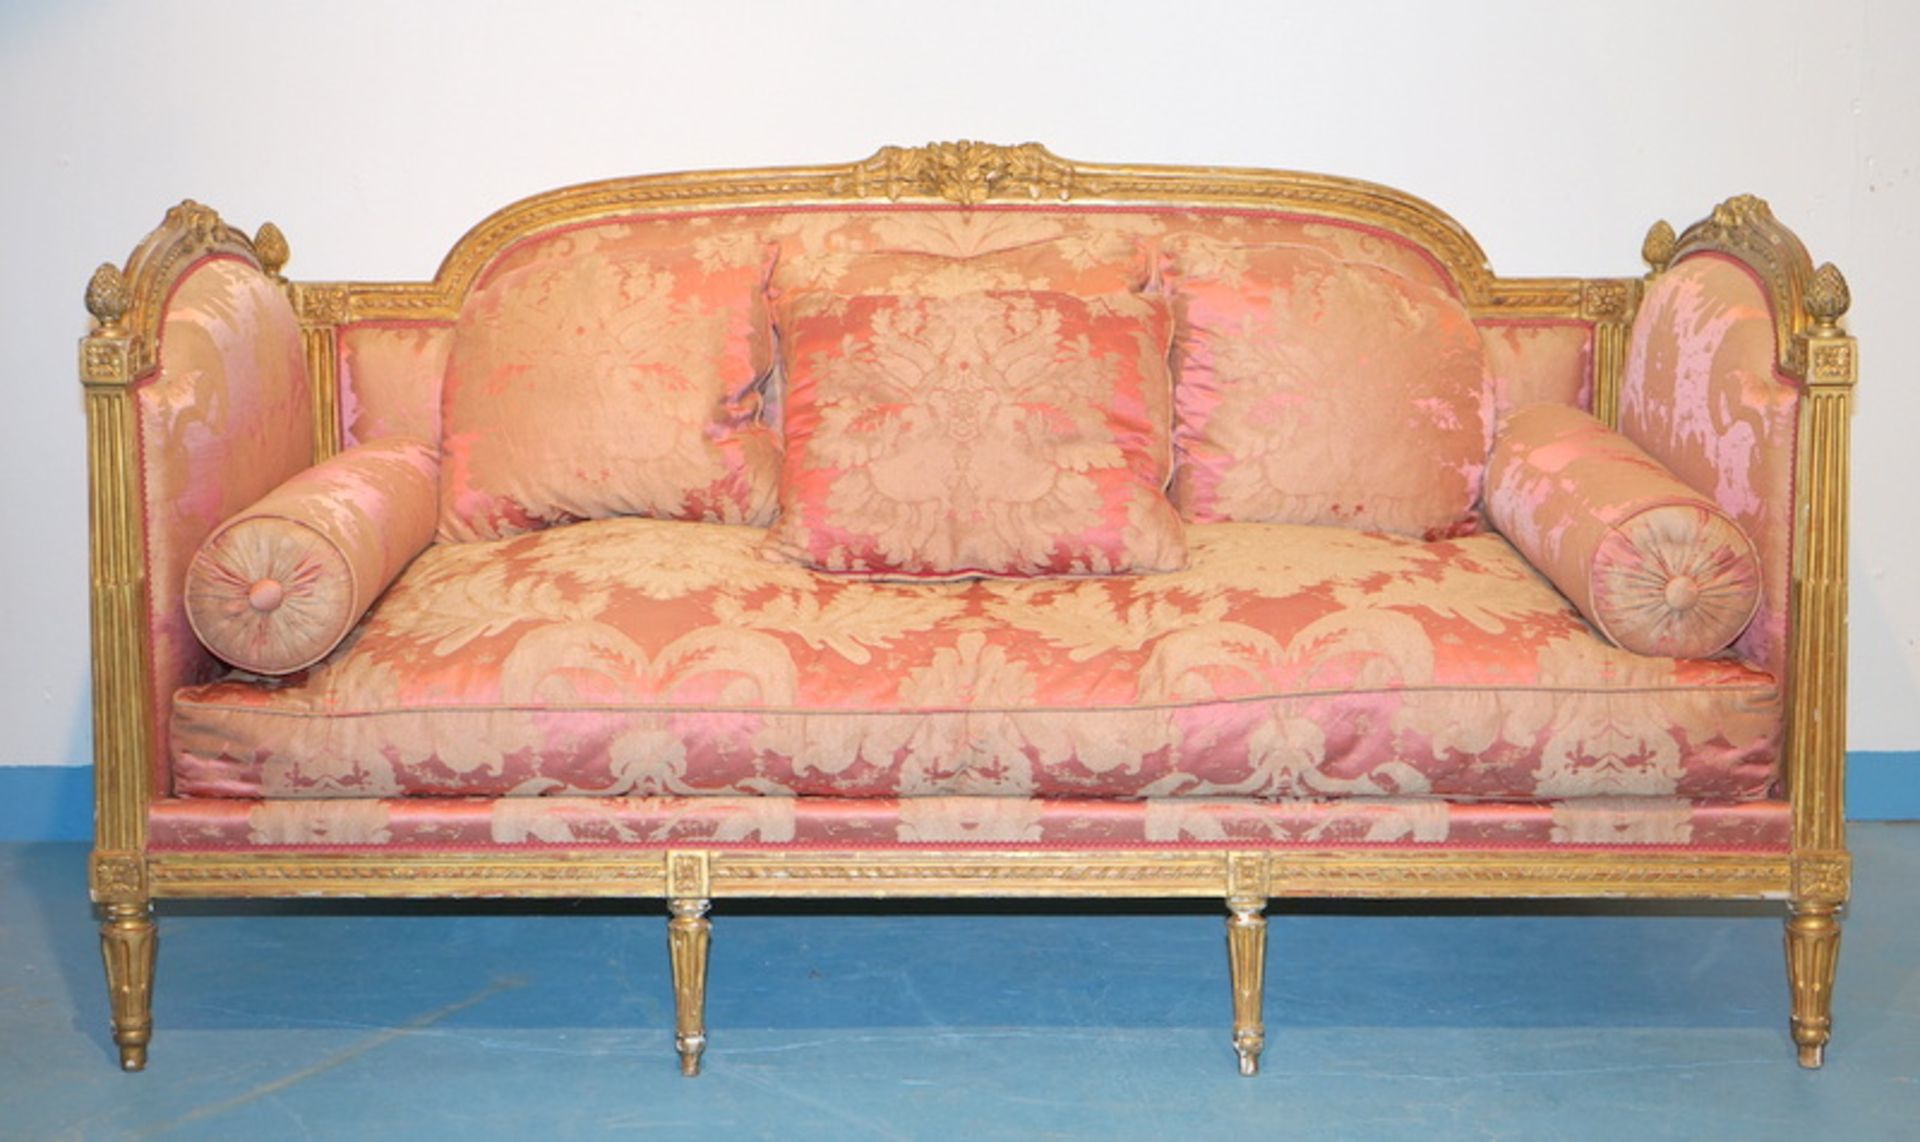 Großes Sofa, Lit du Jour, Louis Seize Stil, 19.Jhd.